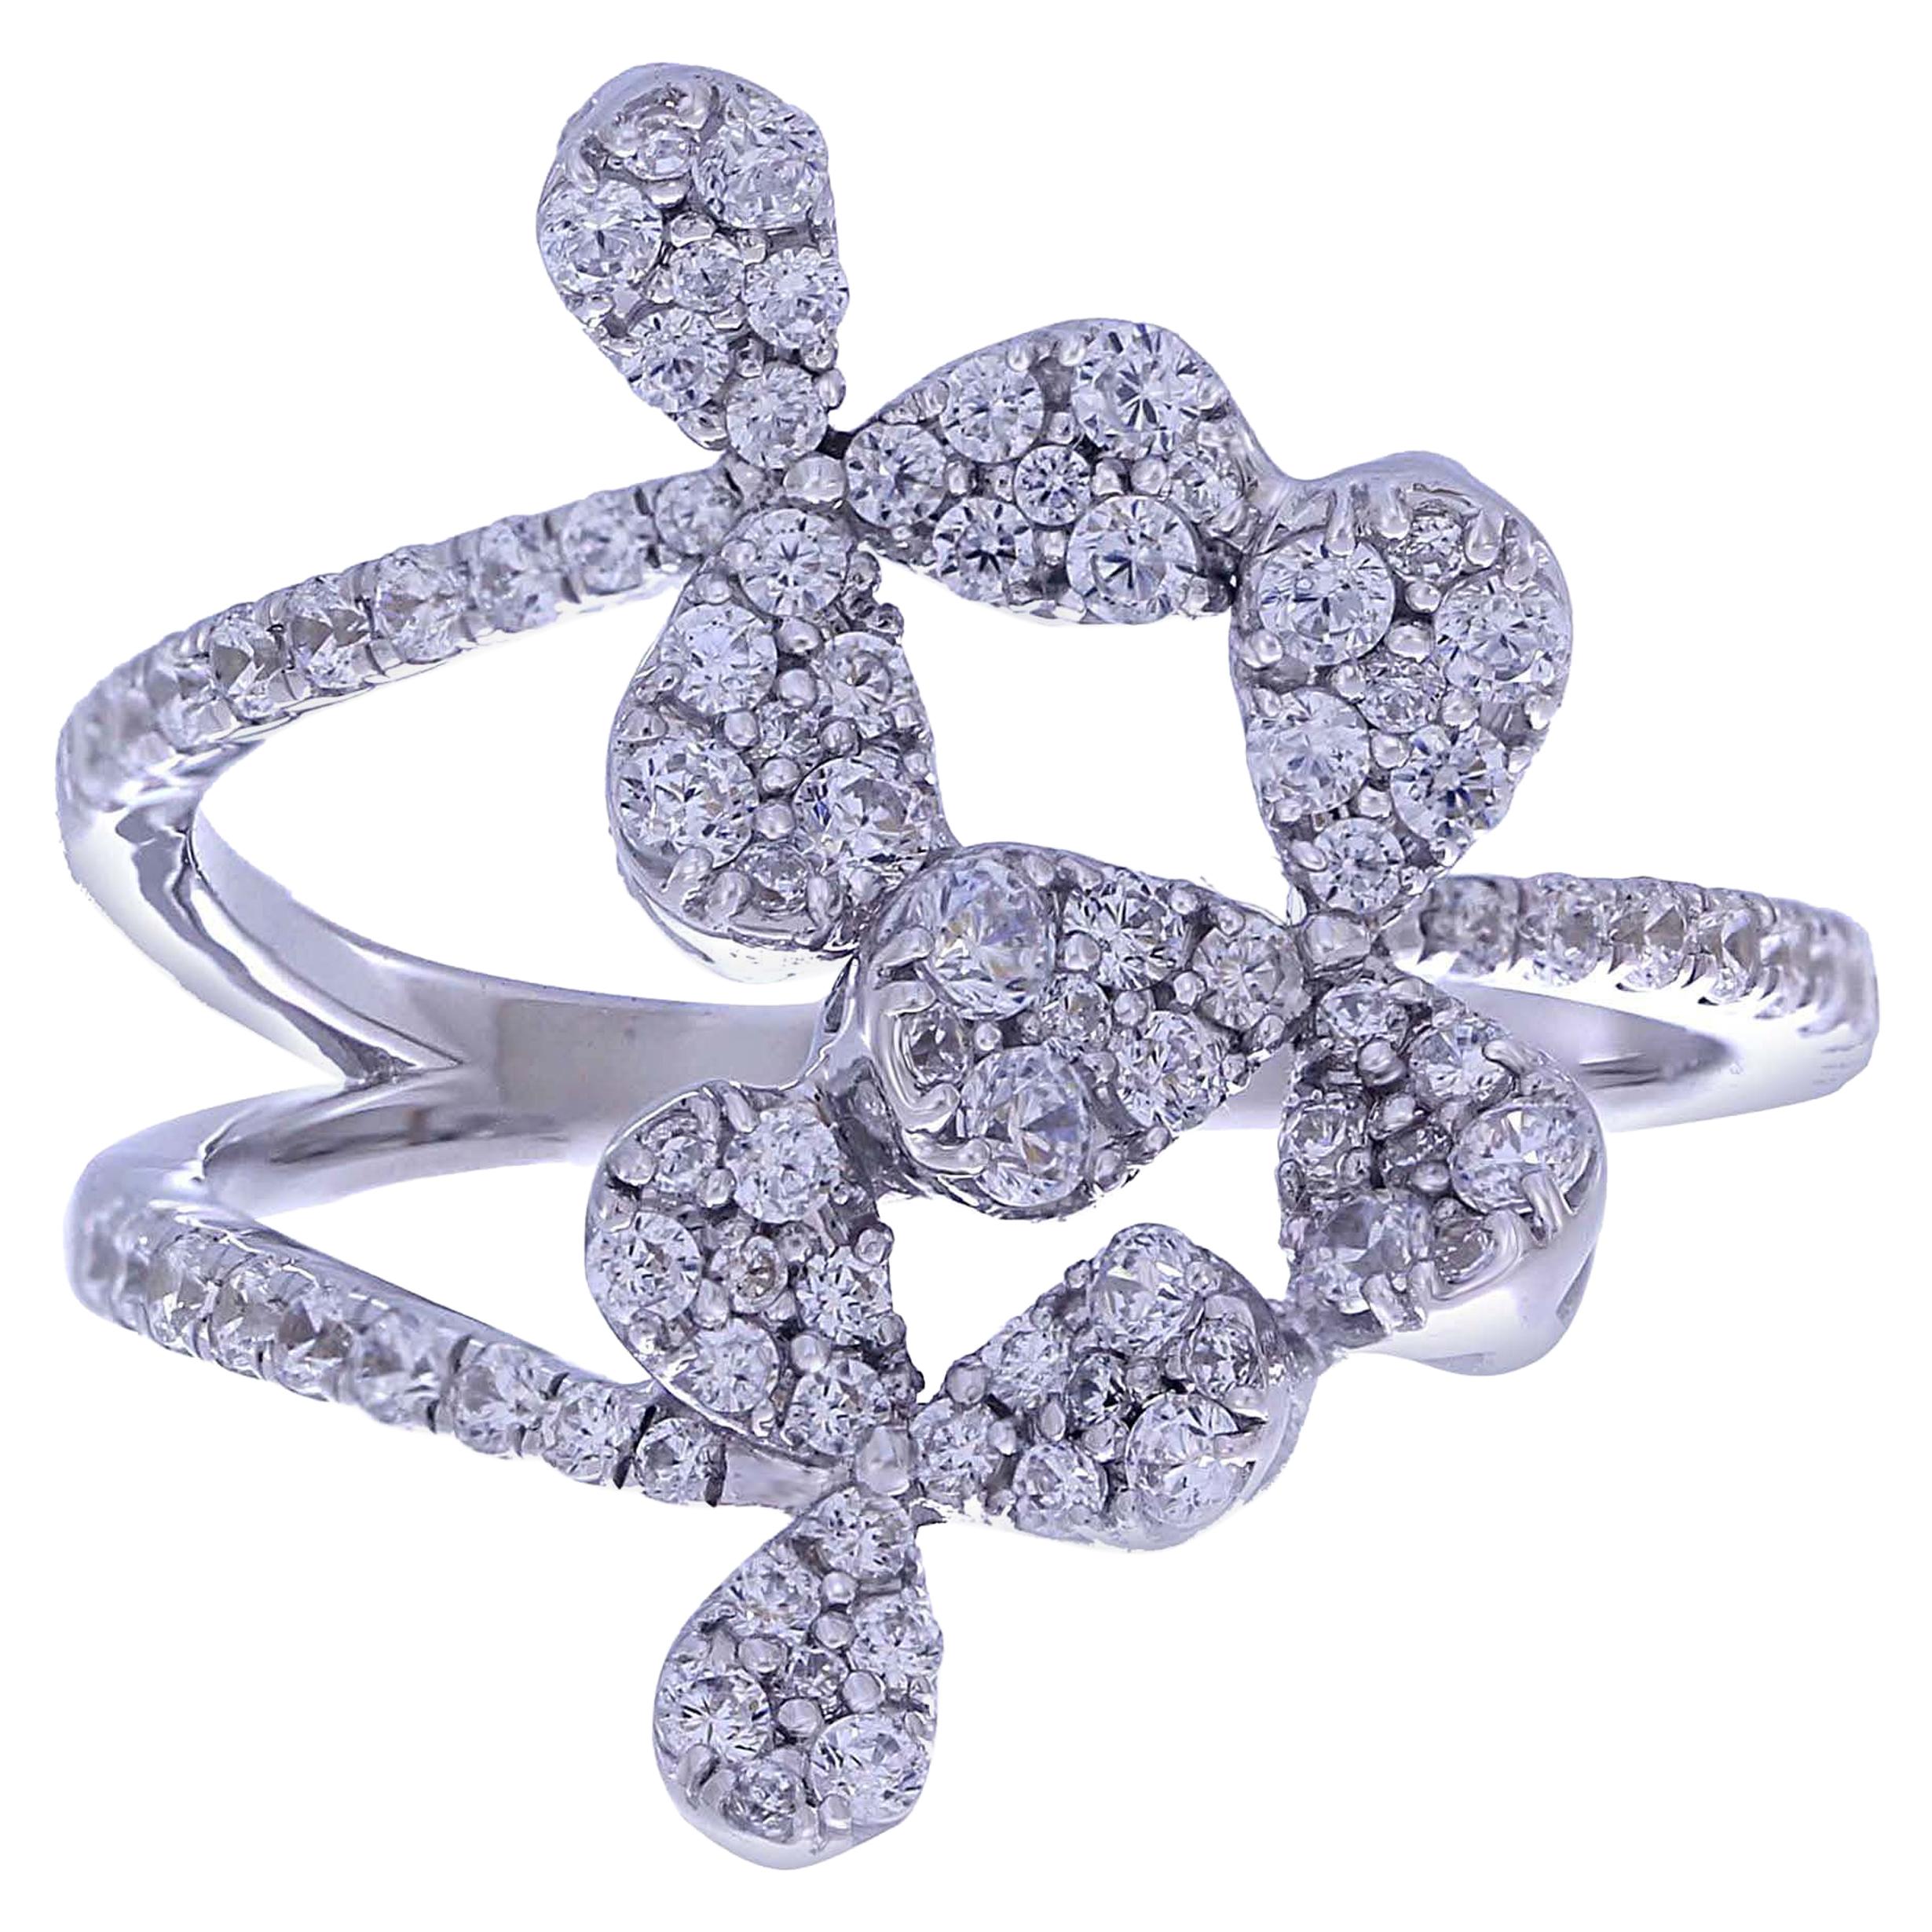 0.70 Carat White Diamond Pave Ring with 18 Karat White Gold Floral Design Ring